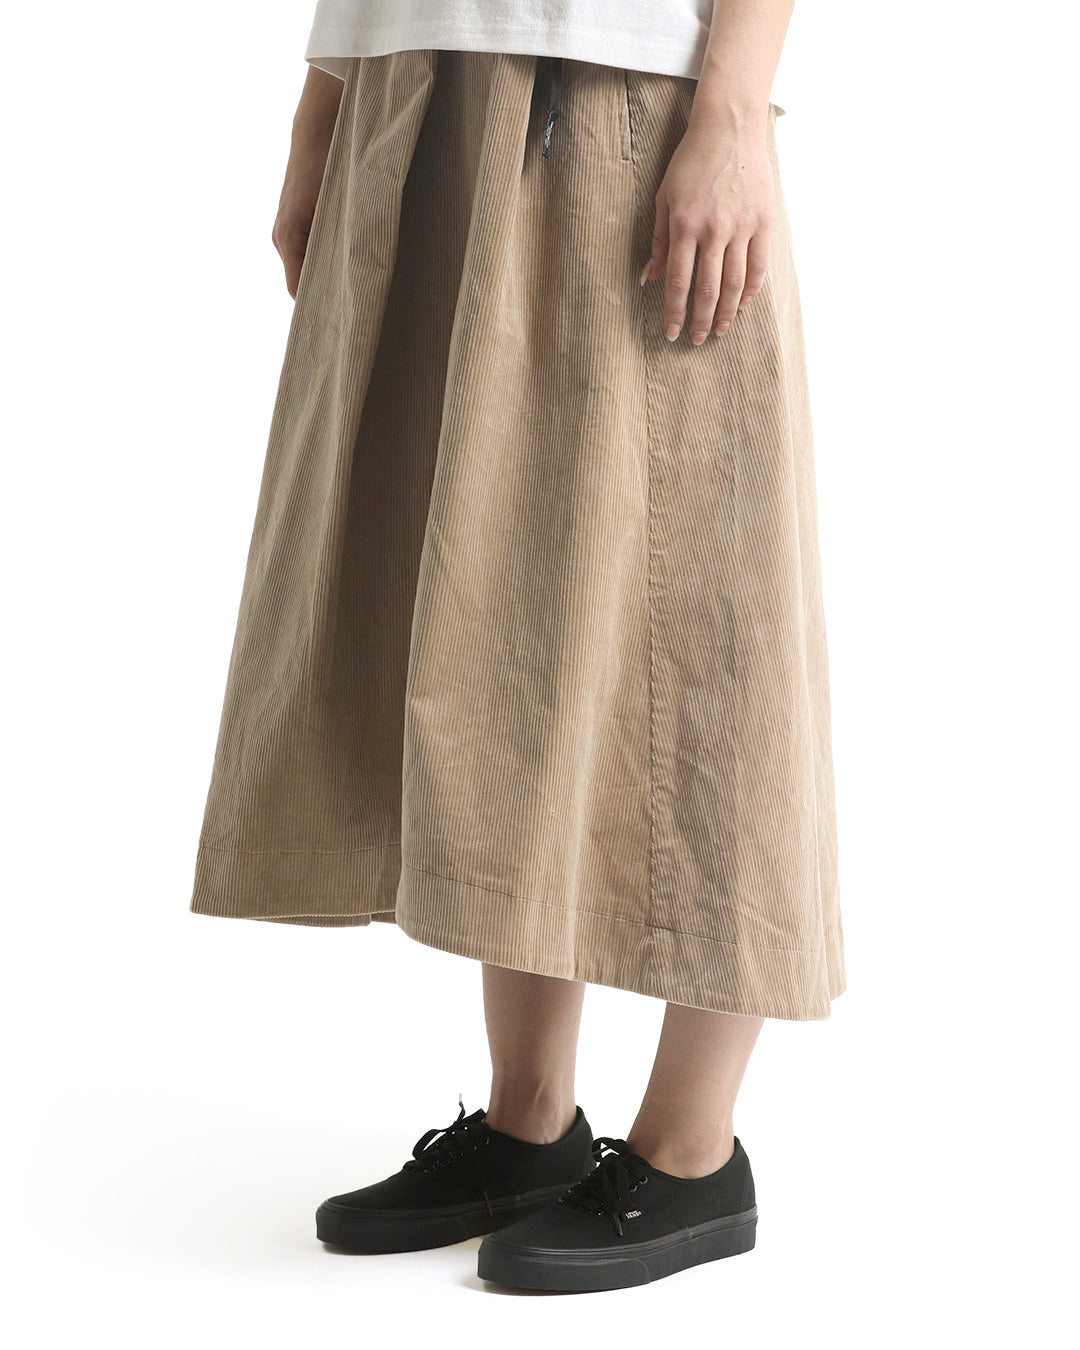 Talecut Skirt - Beige|Model